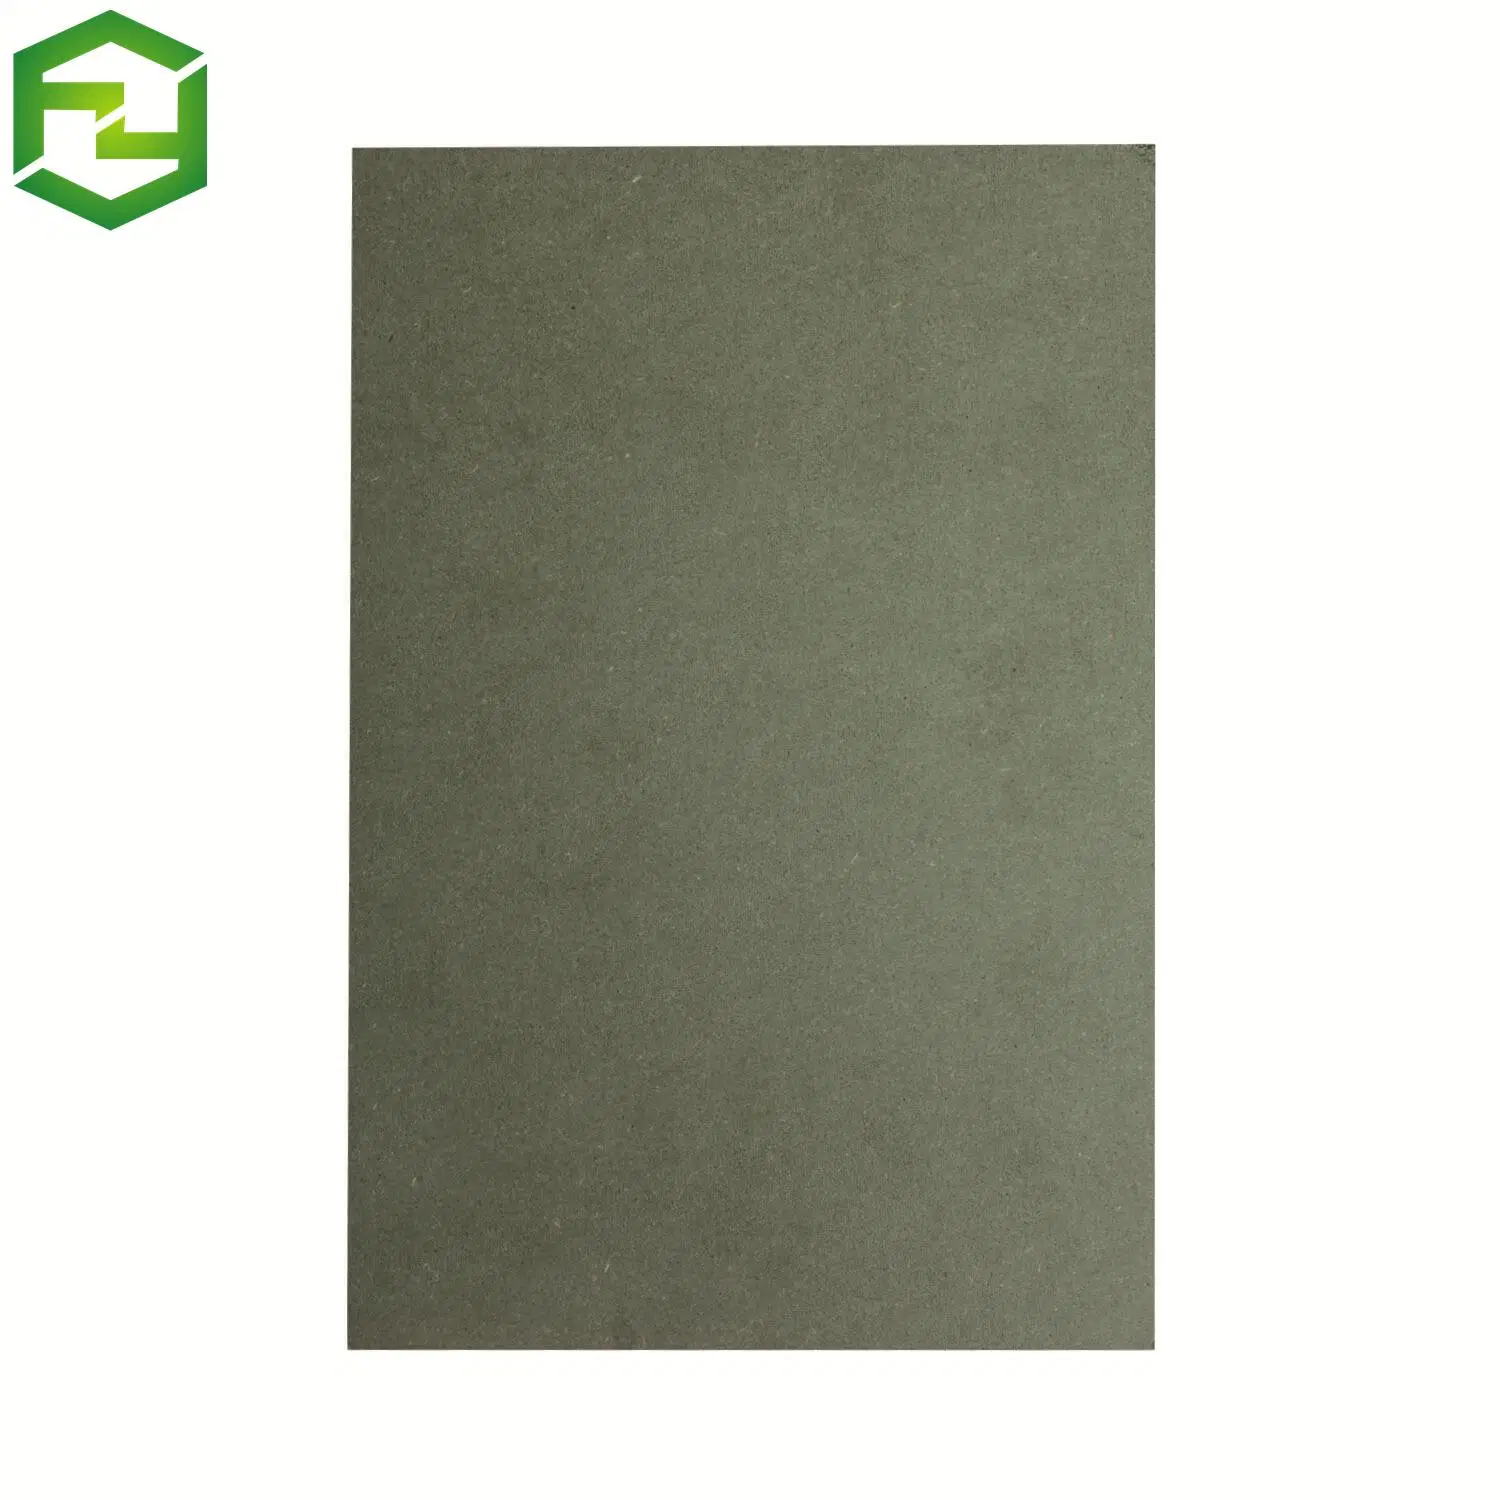 Placa MDF verde HMR impermeável, resistente à humidade, com cola E1 de 12 mm